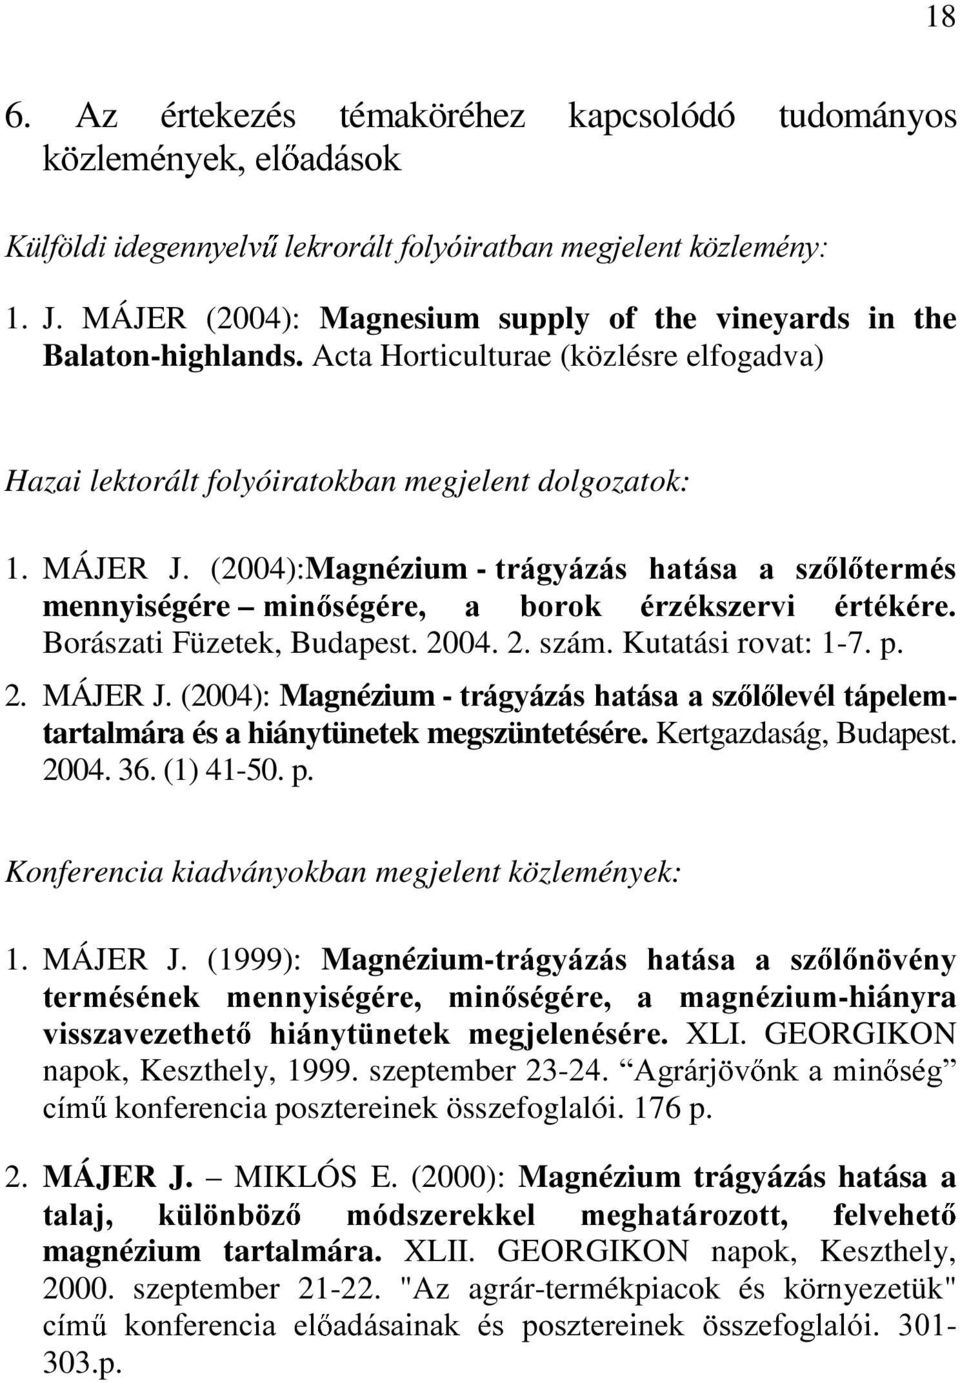 (2004):Magnézium - WUiJ\i]iV KDWiVD D V] O WHUPpV mennyiségére PLQ VpJpUH D ERURN pu]pnv]huyl puwpnpuh Borászati Füzetek, Budapest. 2004. 2. szám. Kutatási rovat: 1-7. p. 2. MÁJER J.